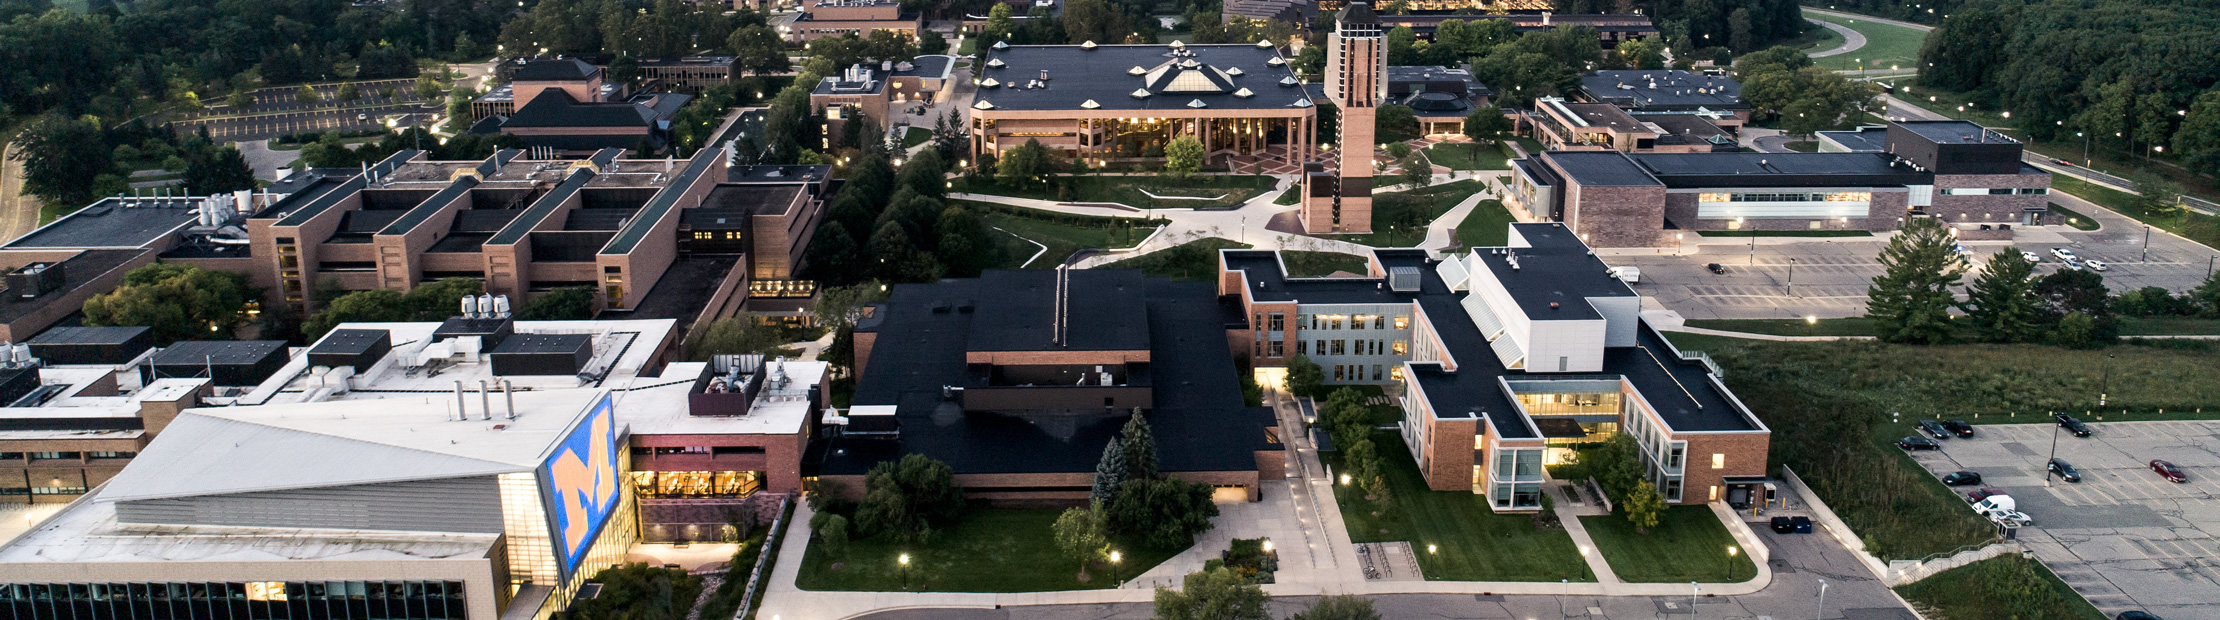 North campus aerial